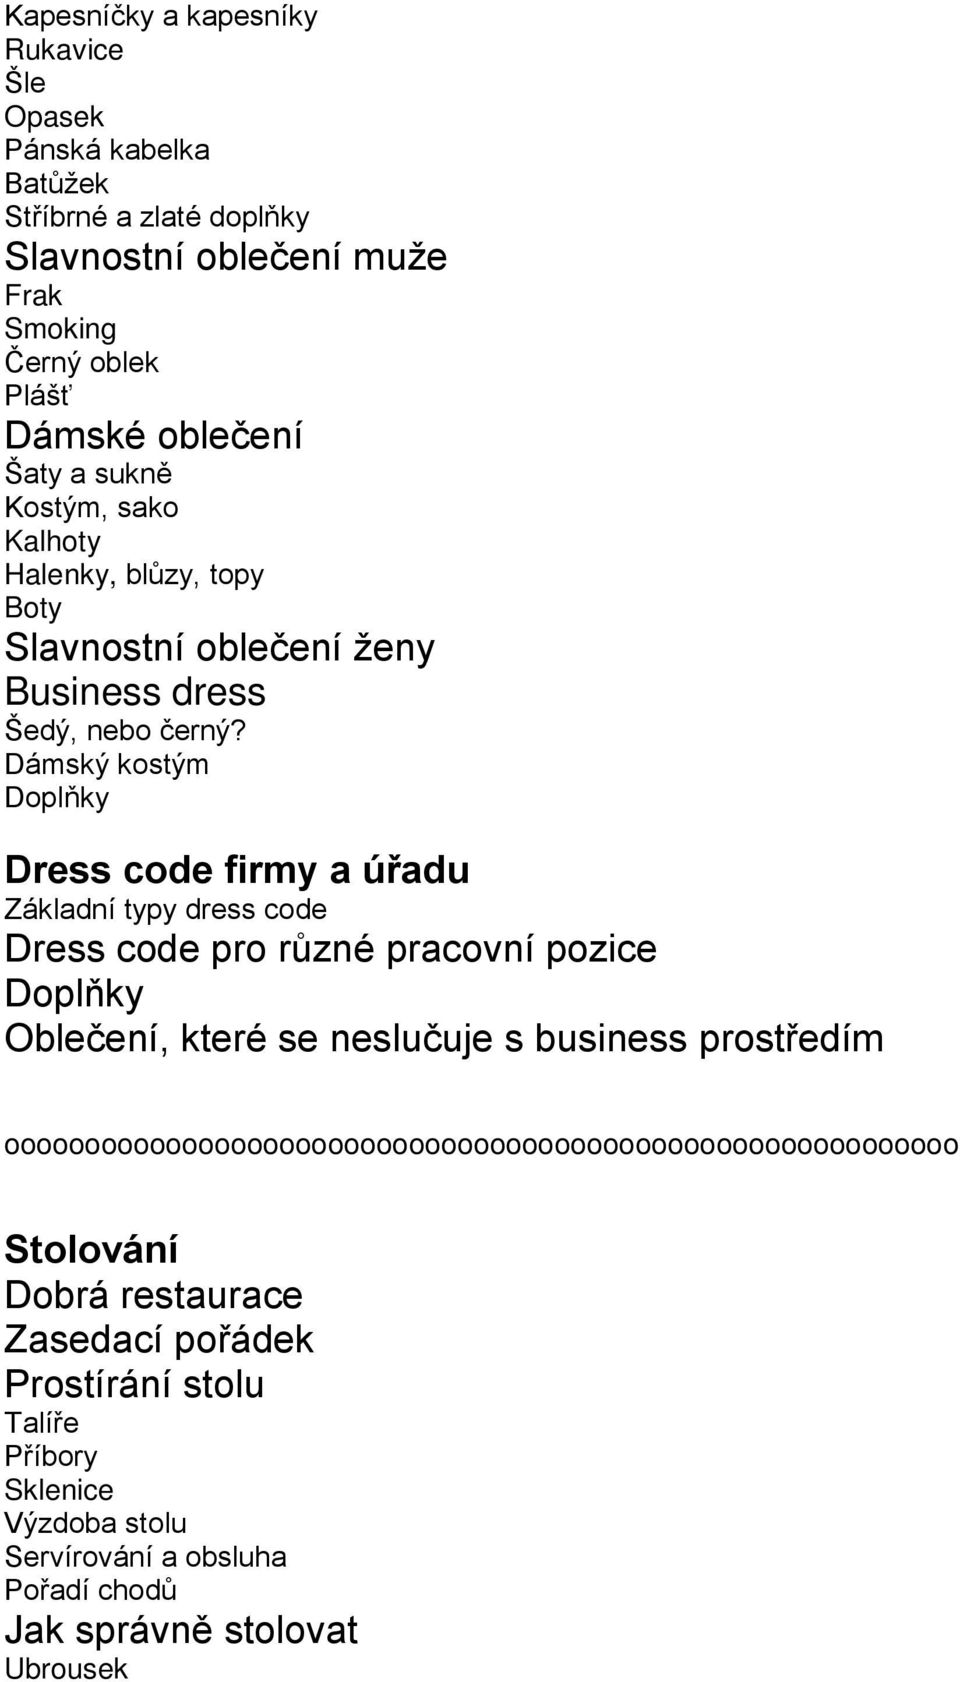 Dámský kostým Doplňky Dress code firmy a úřadu Základní typy dress code Dress code pro různé pracovní pozice Doplňky Oblečení, které se neslučuje s business prostředím